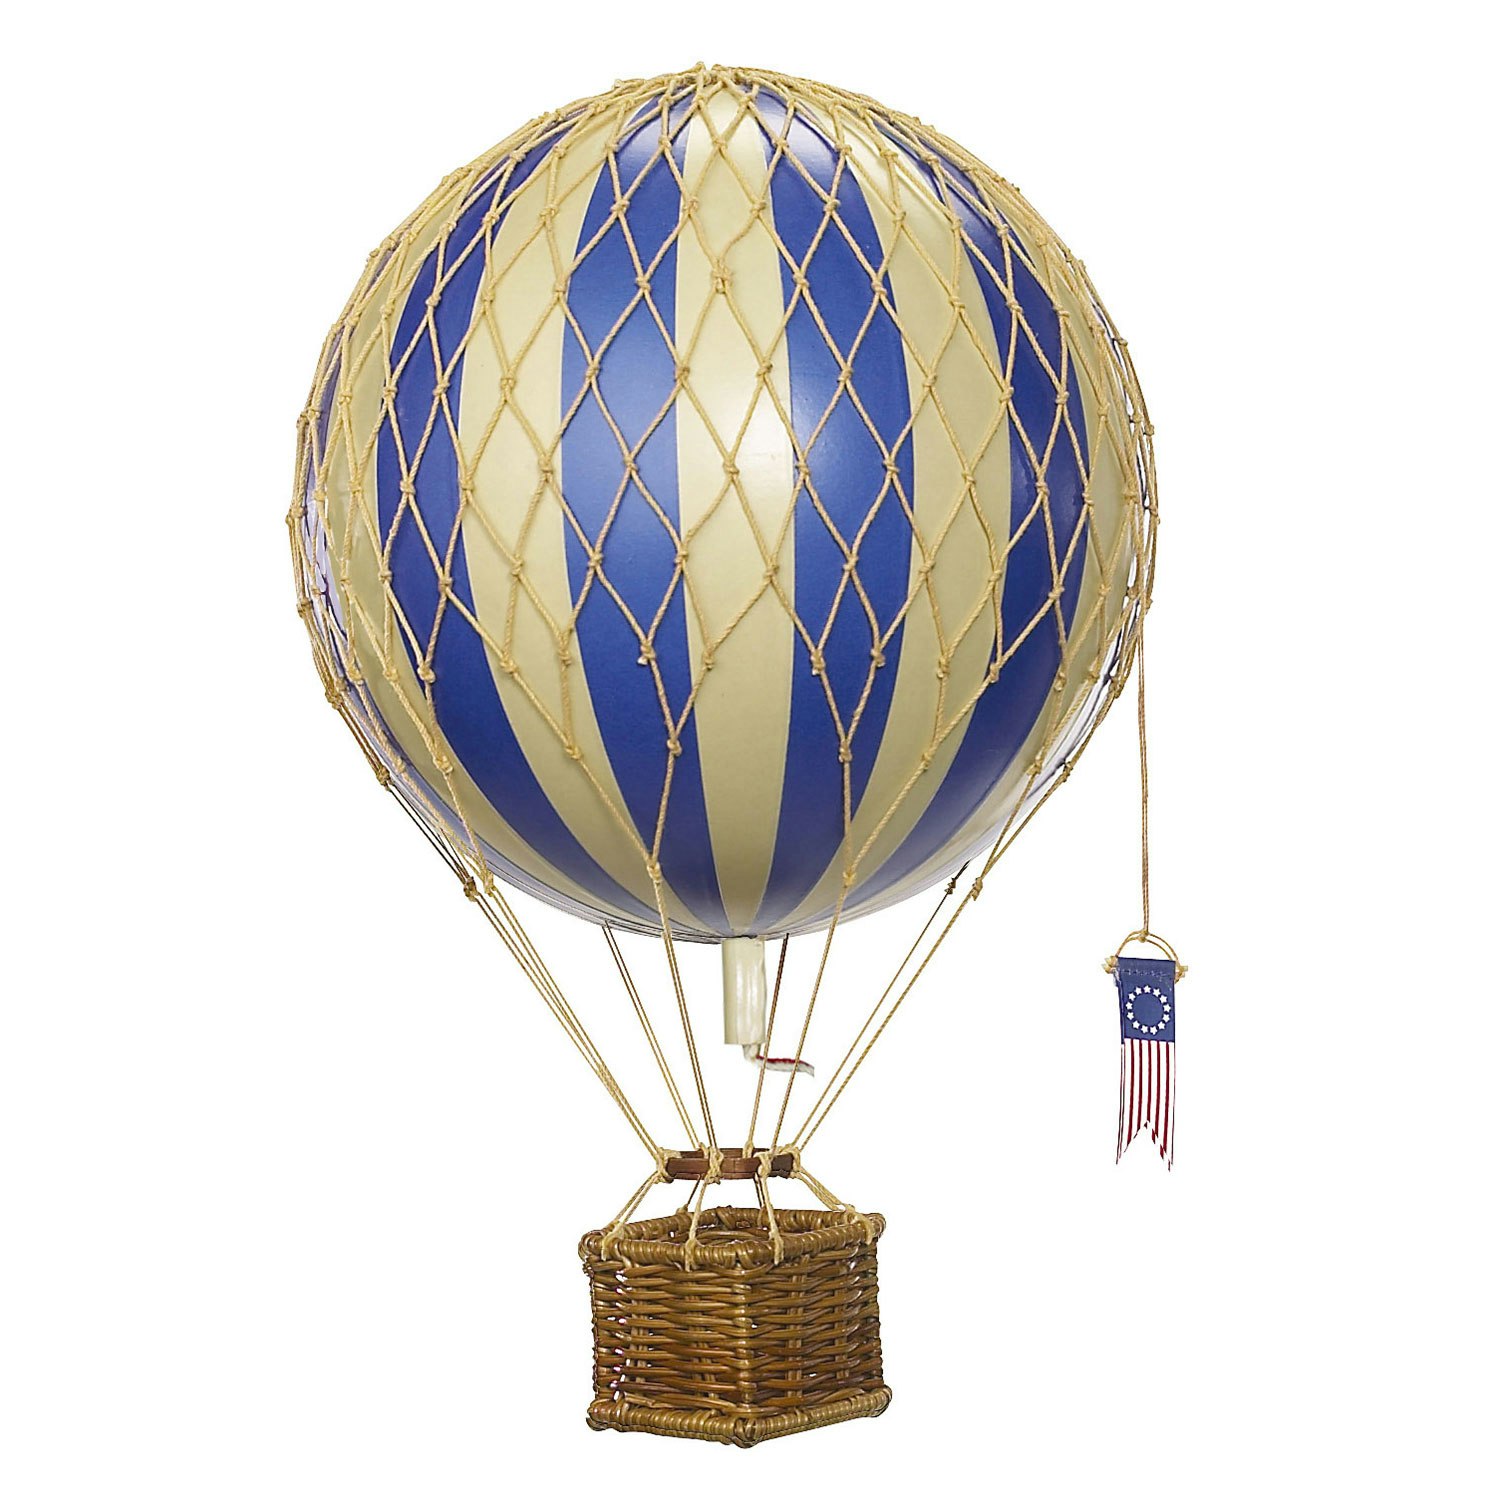 Модели воздушных шаров